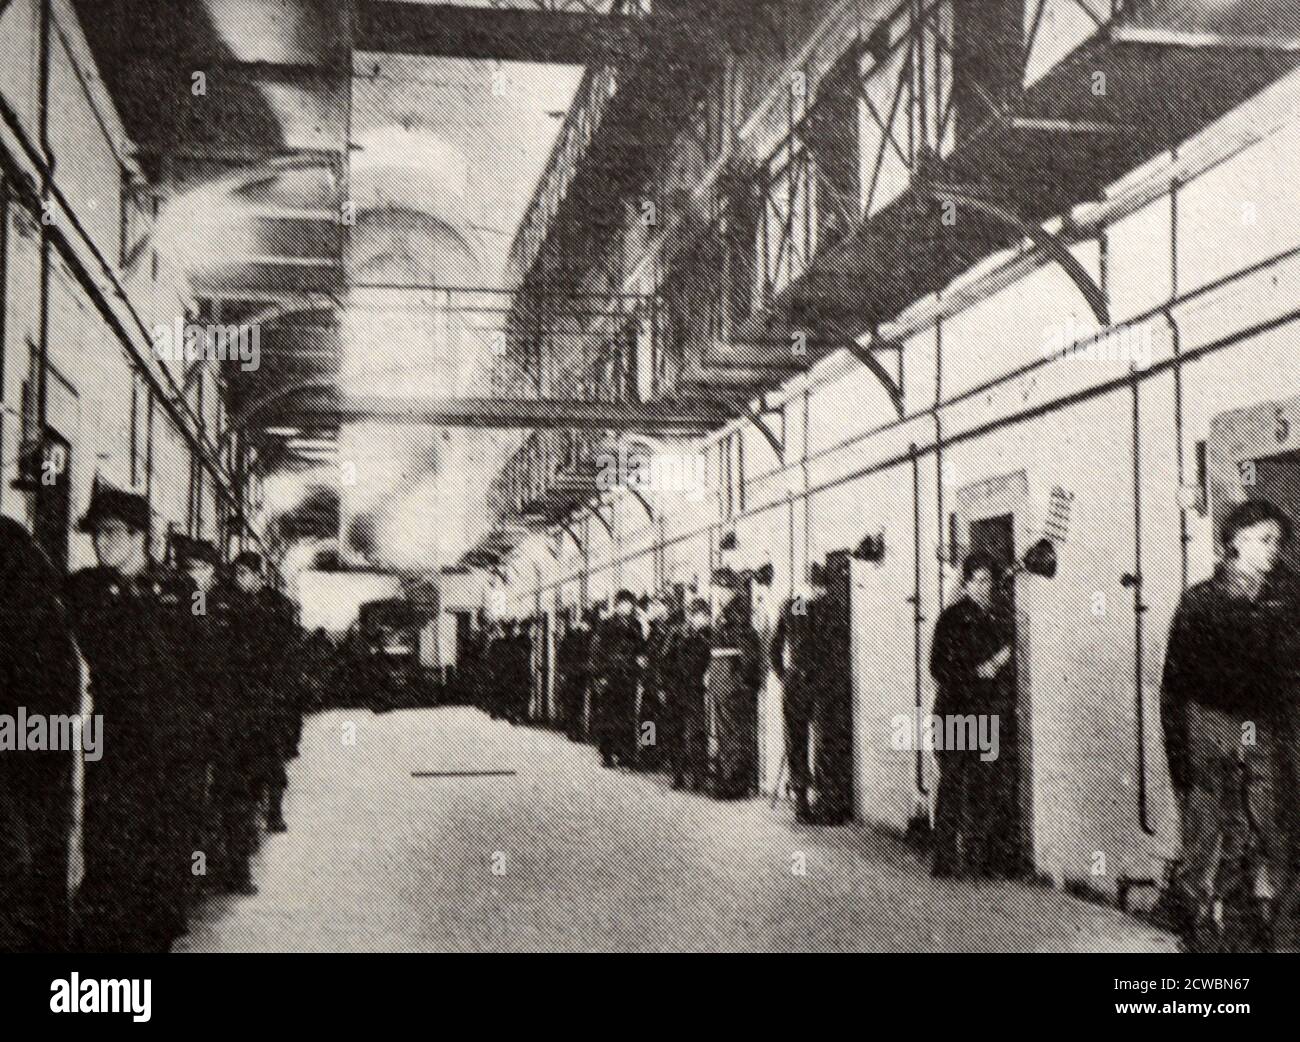 Photographie en noir et blanc de la Seconde Guerre mondiale (1939-1945) montrant des images liées au procès de Nuremberg, la plus grande accusation de l'histoire, et qui a commencé en novembre 1945; un couloir de cellules de prison avec une garde placée à la porte de chaque cellule. Banque D'Images